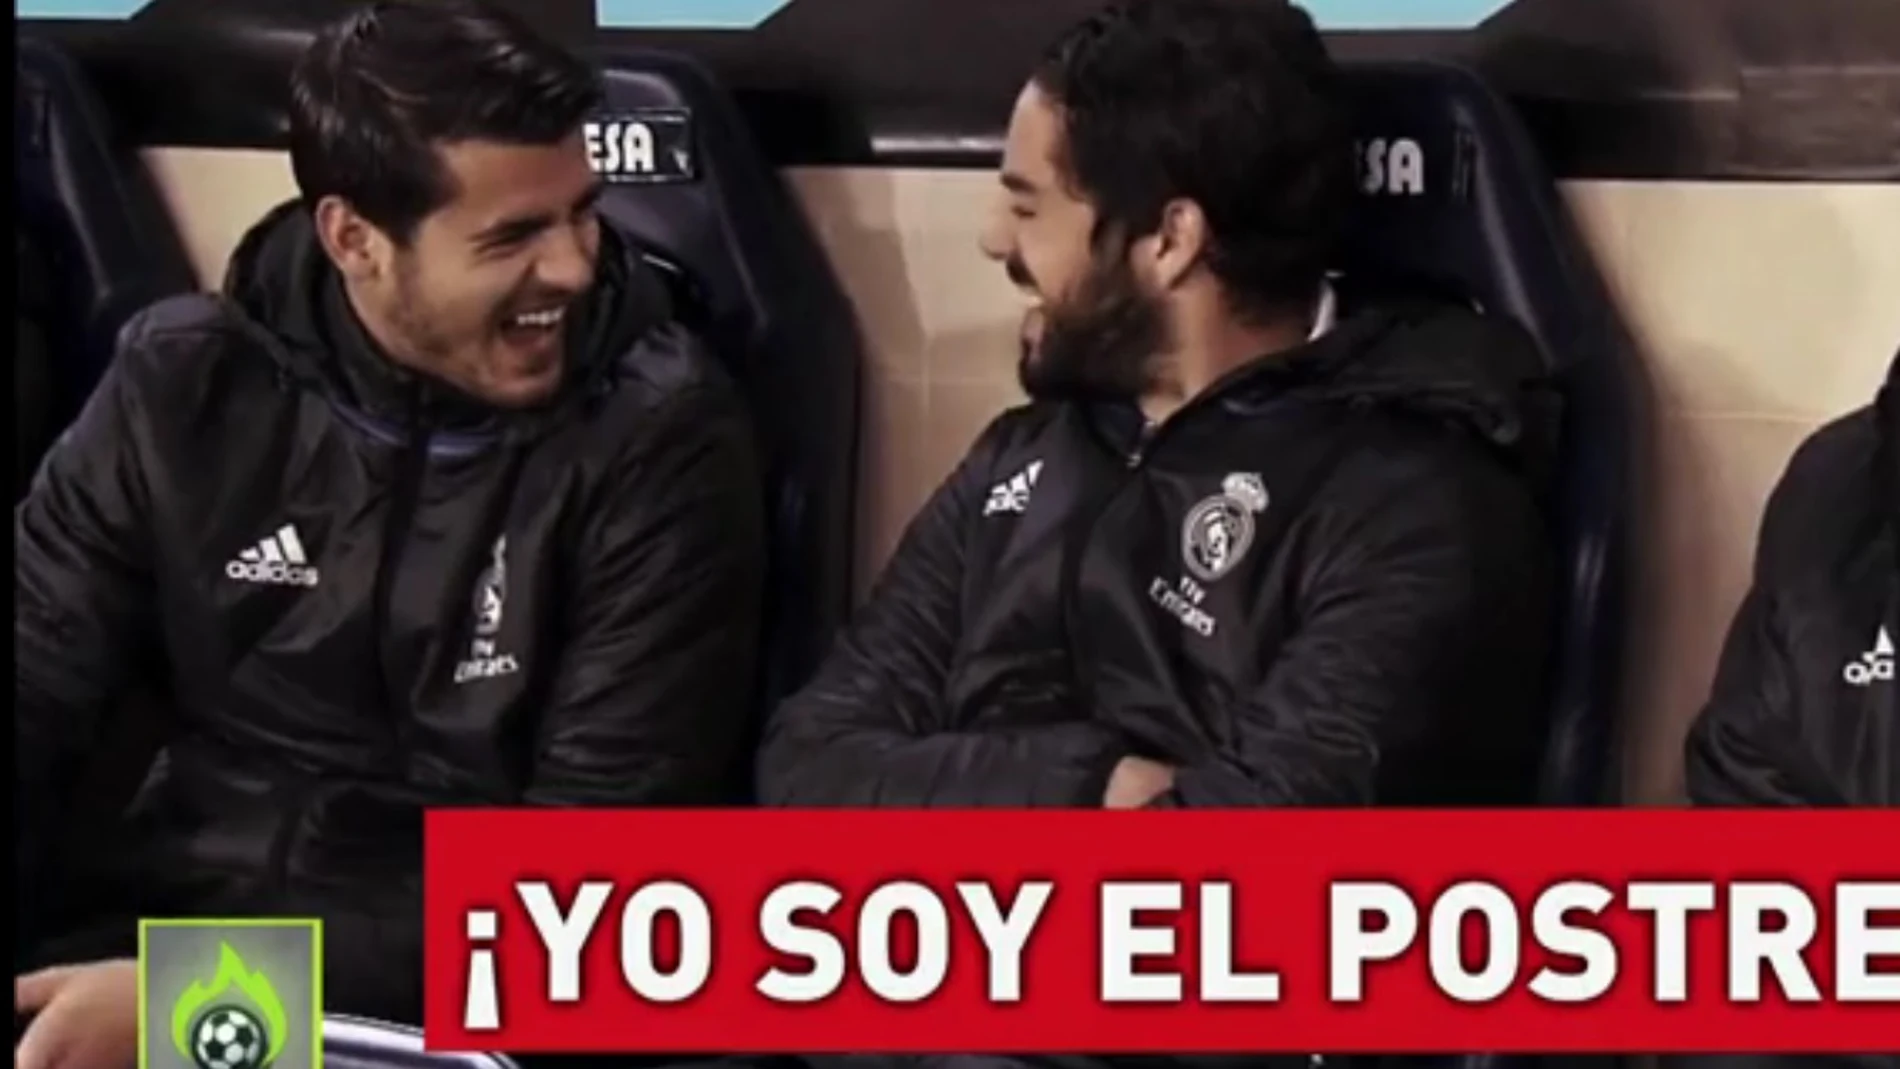 Isco y Morata bromean en el banquillo